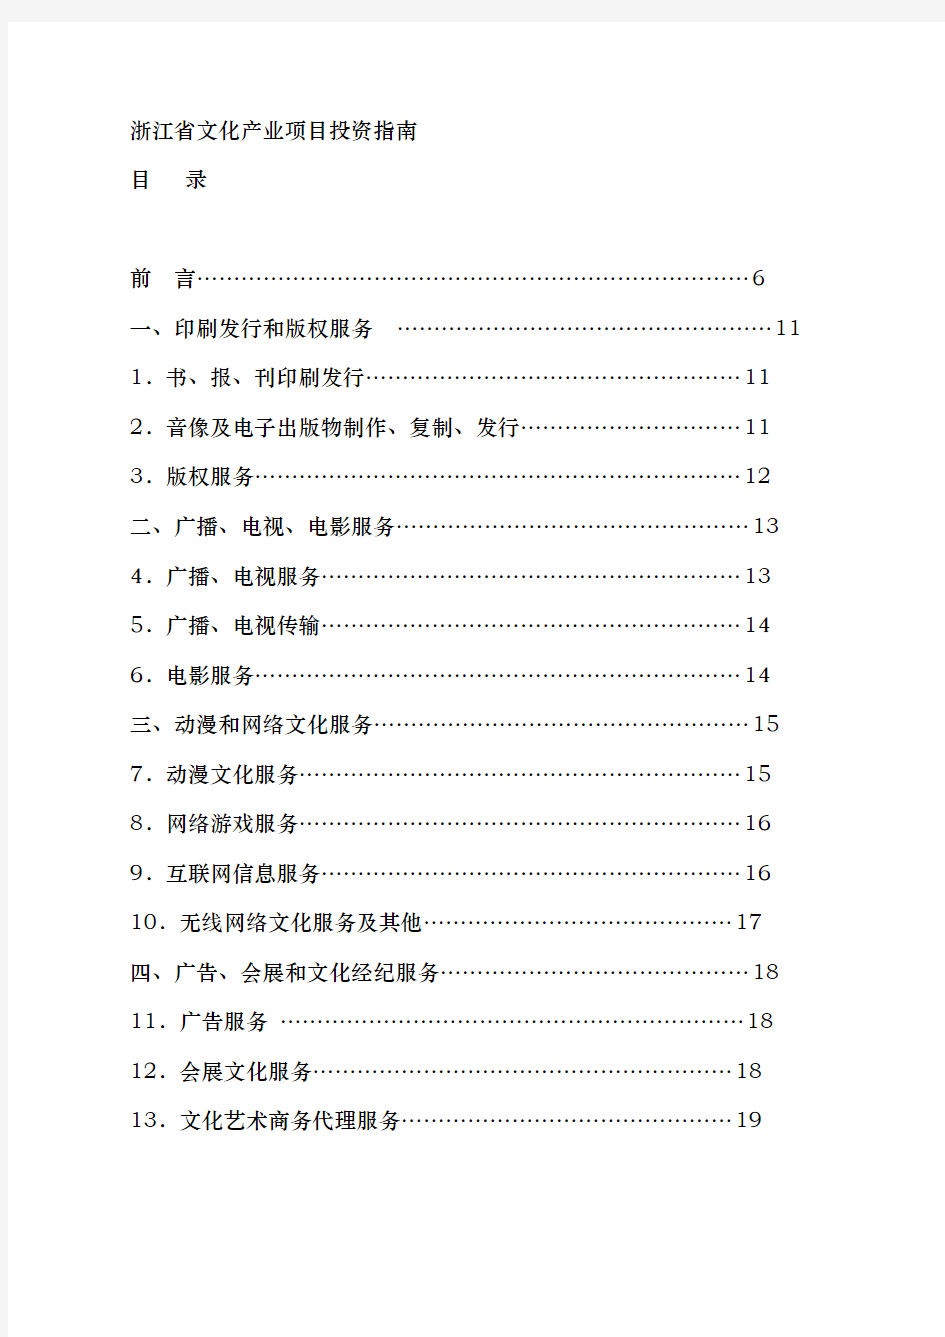 浙江省文化产业项目投资的指南手册范本